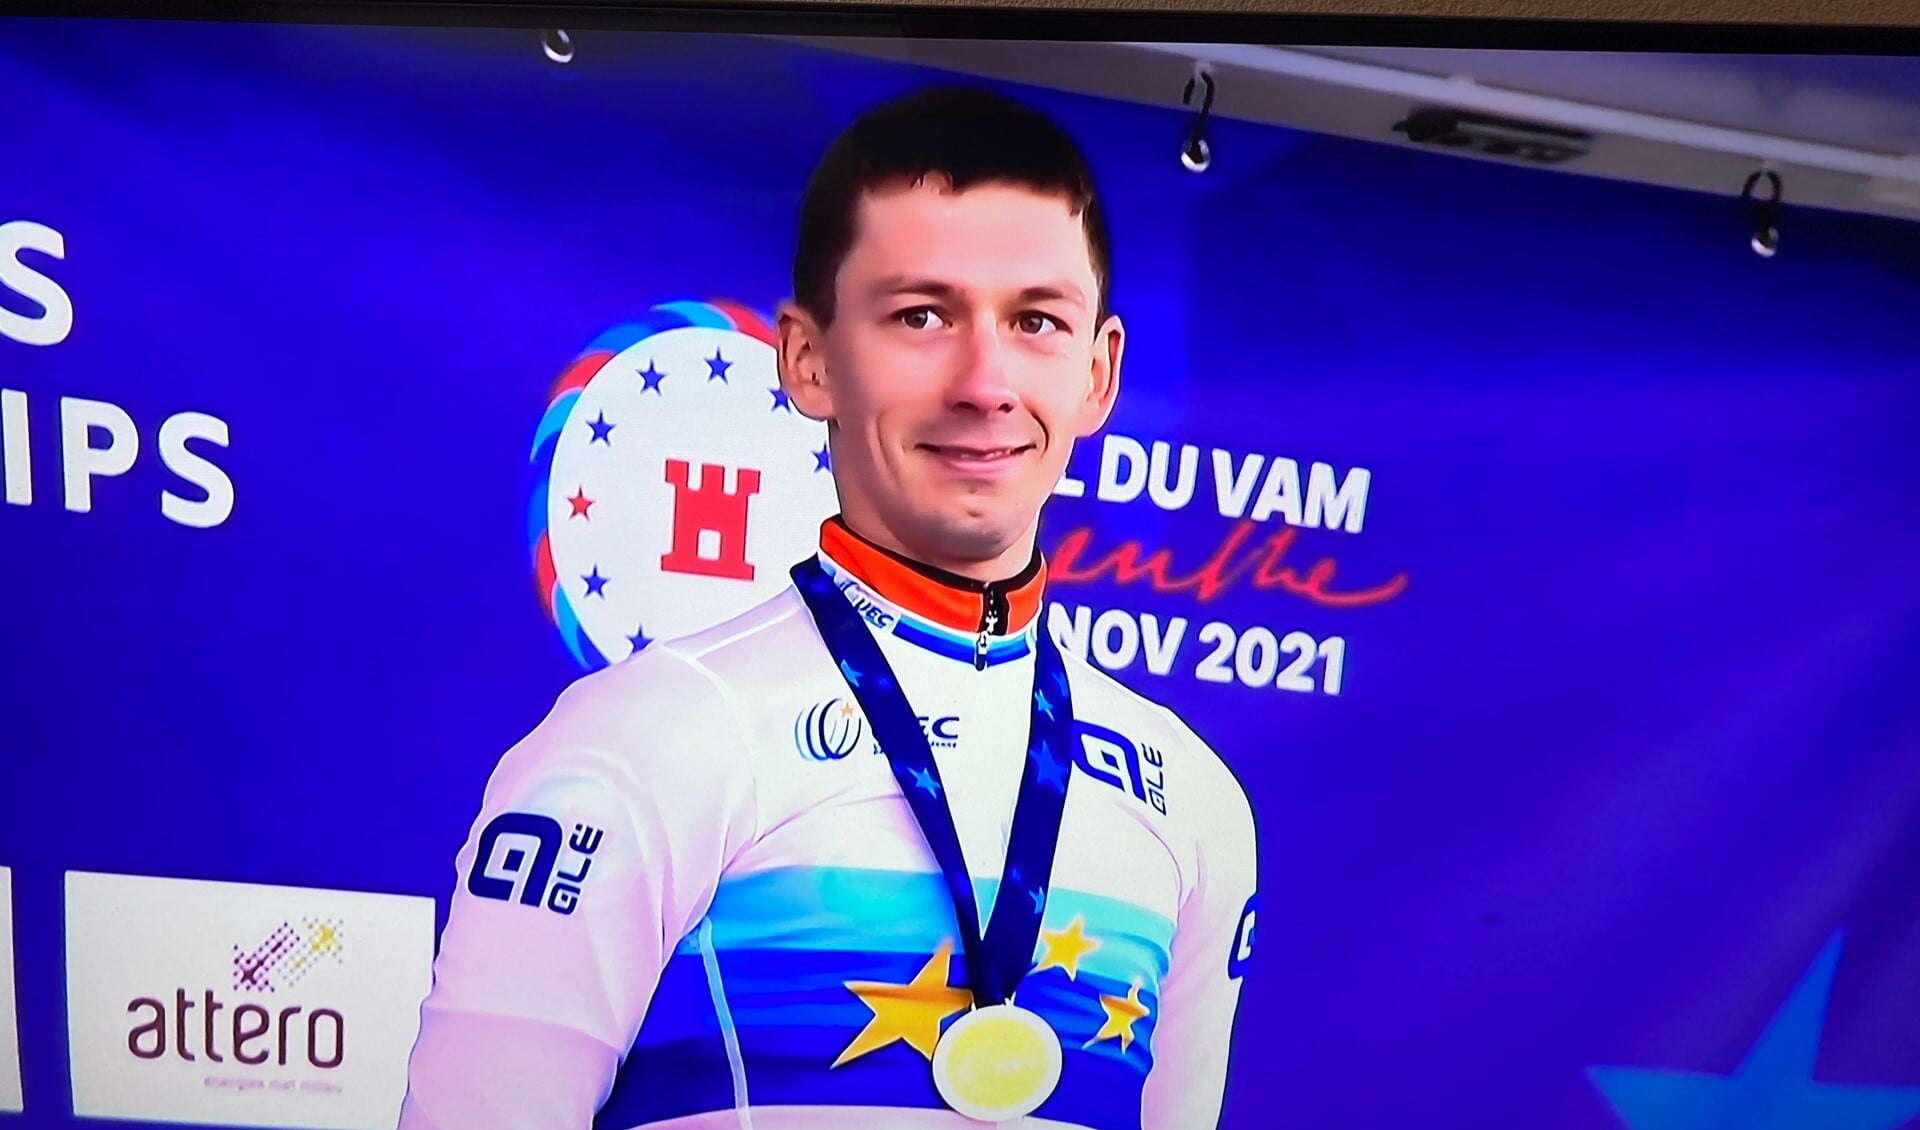 Lars van der Haar Europees kampioen Veldrijden 2021